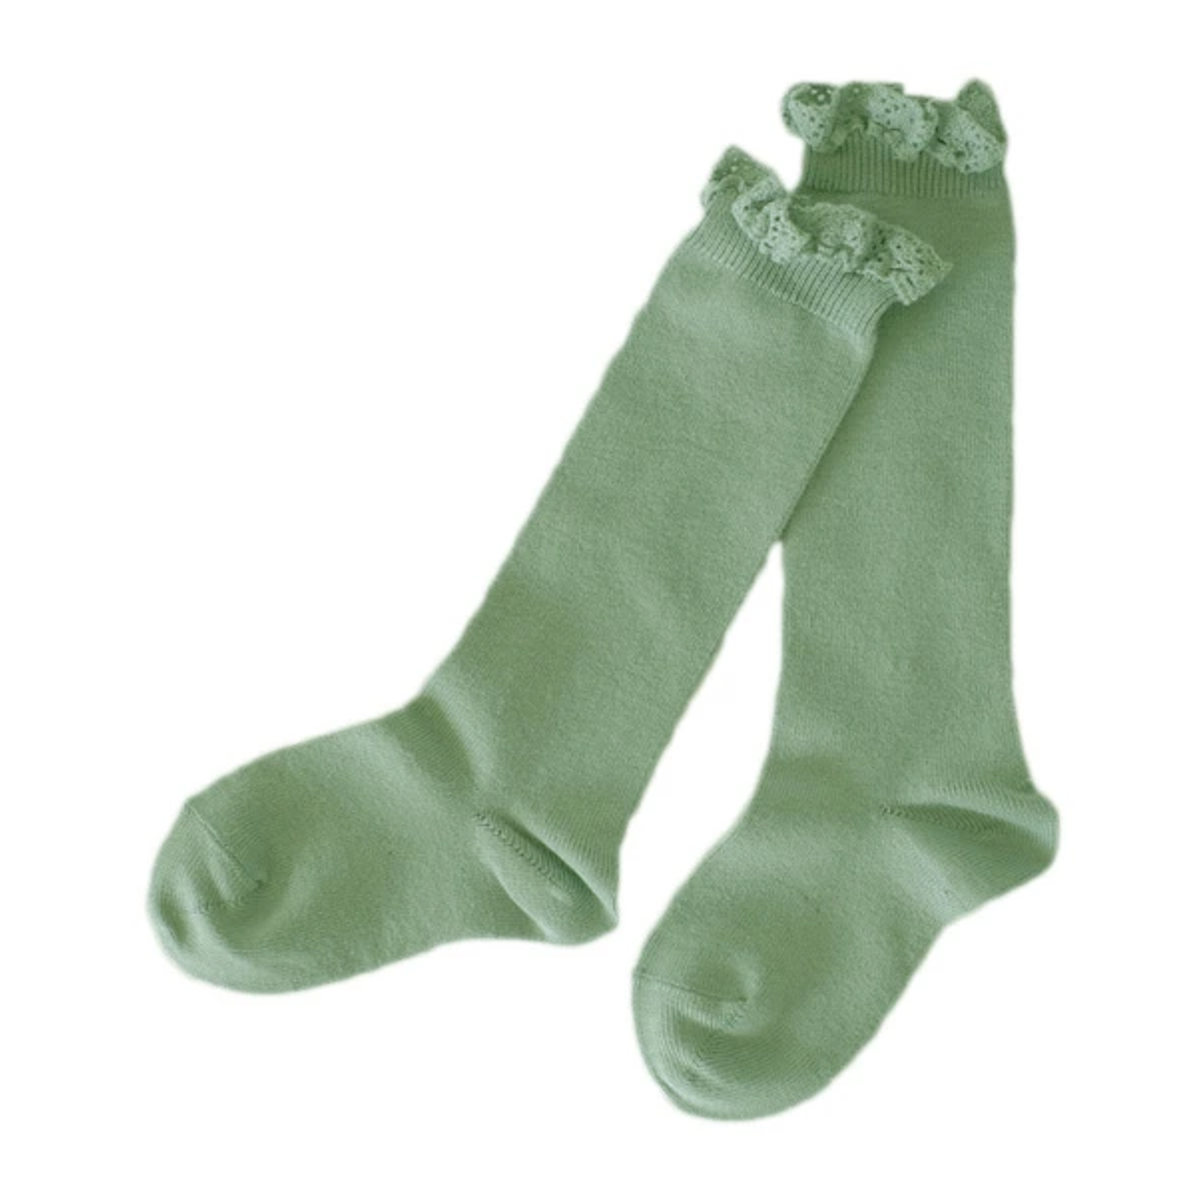 靴下 condor 子供用 7〜8歳 Knee socks with lace edging cuf...